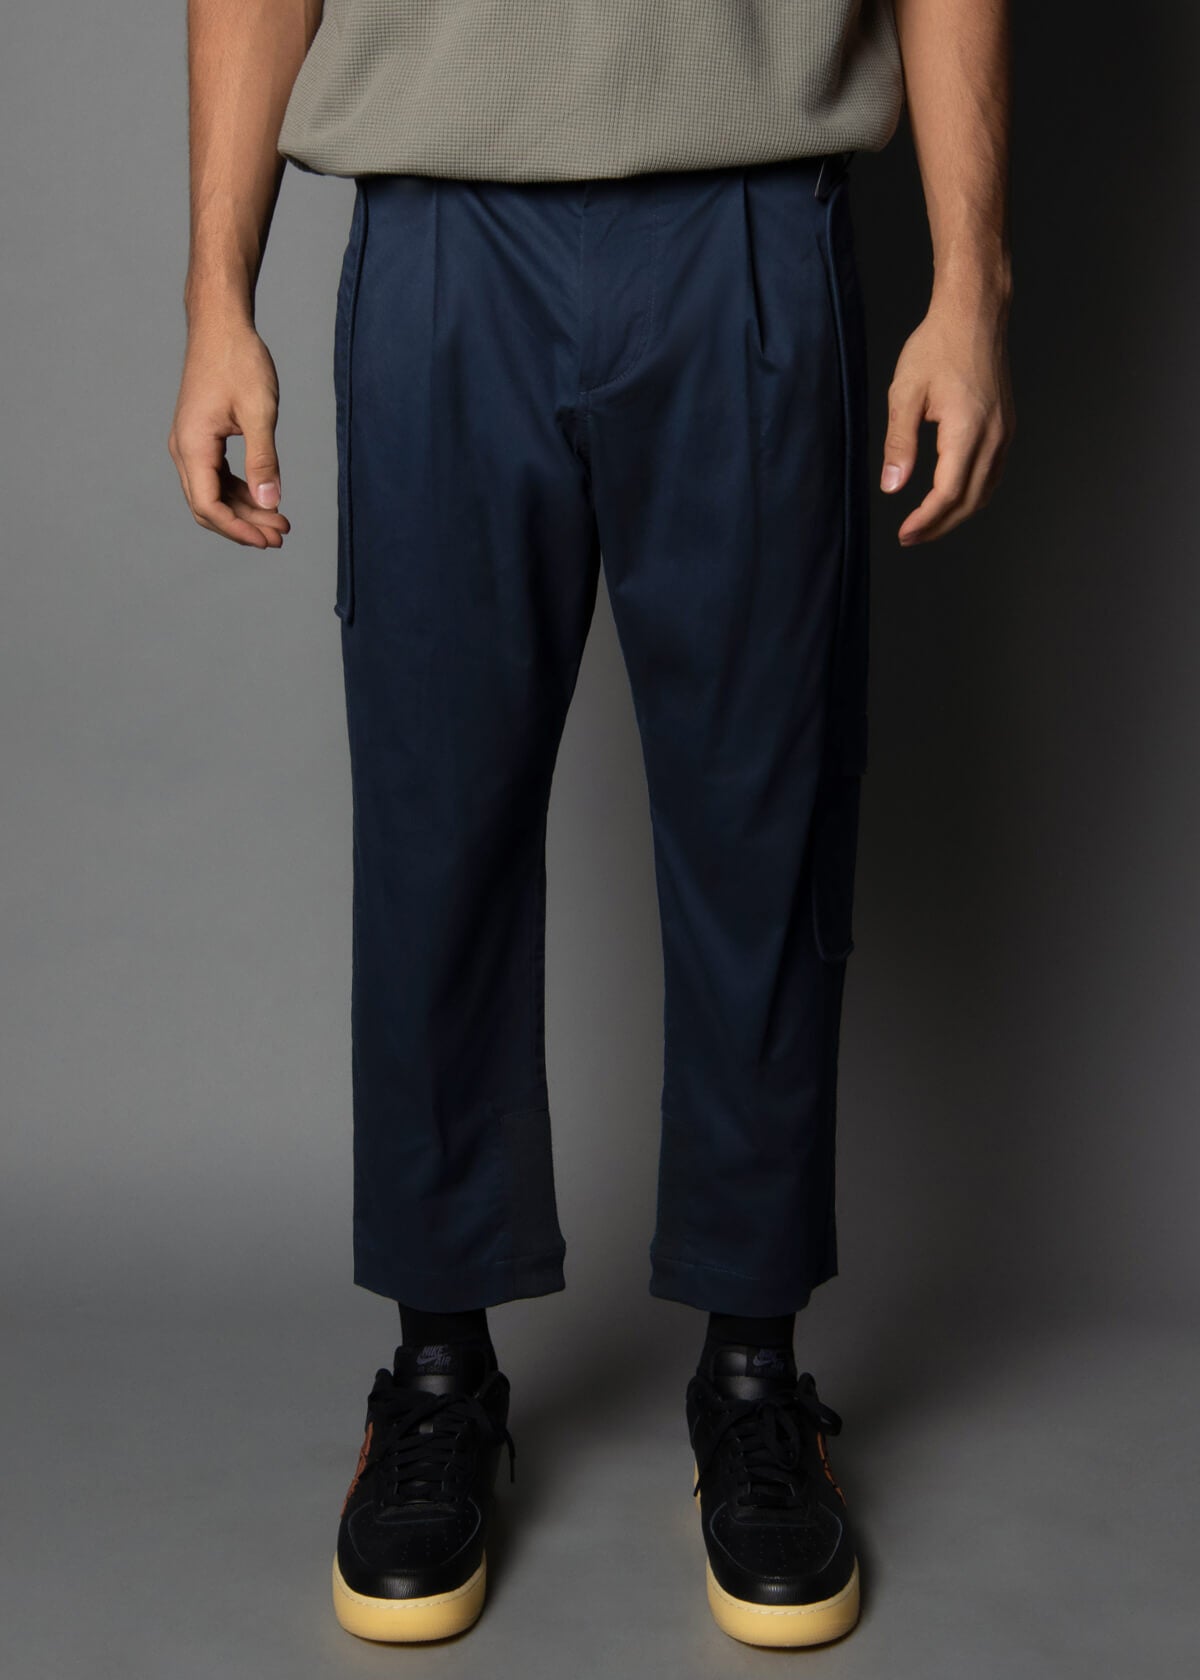 navy cargo pants for men